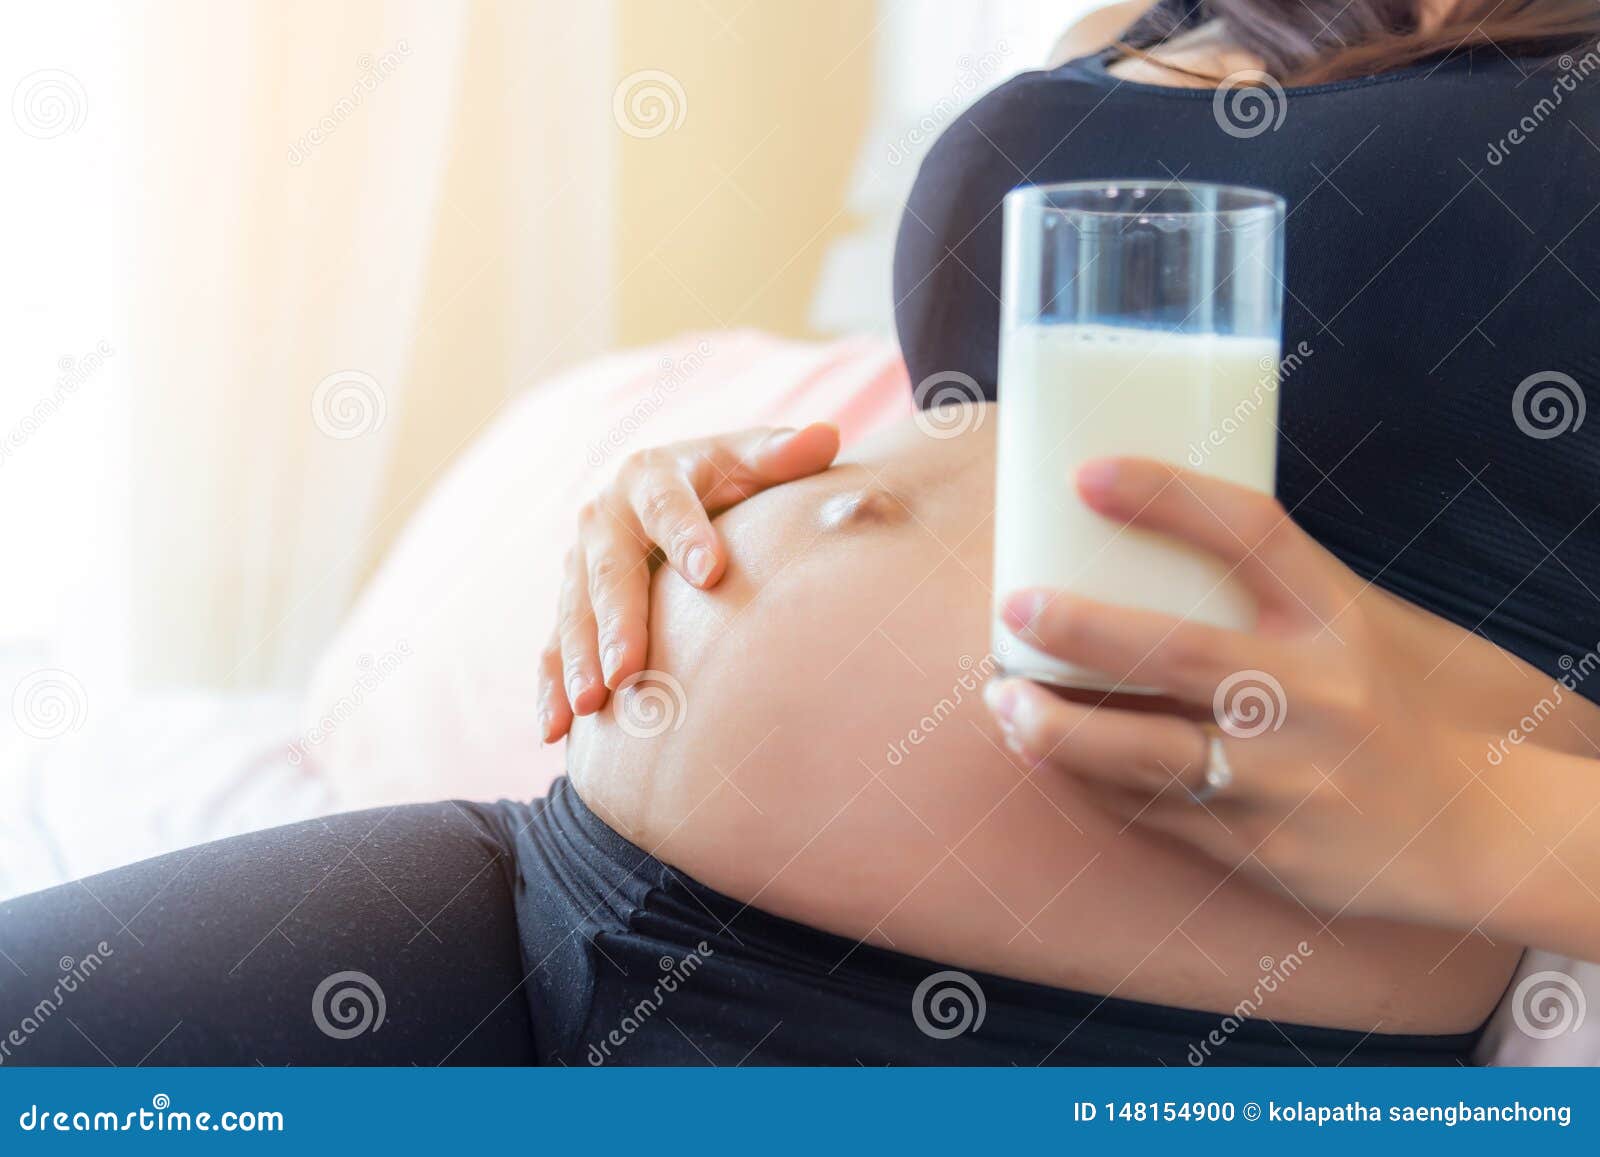 не беременна грудь будто наливается молоком фото 46